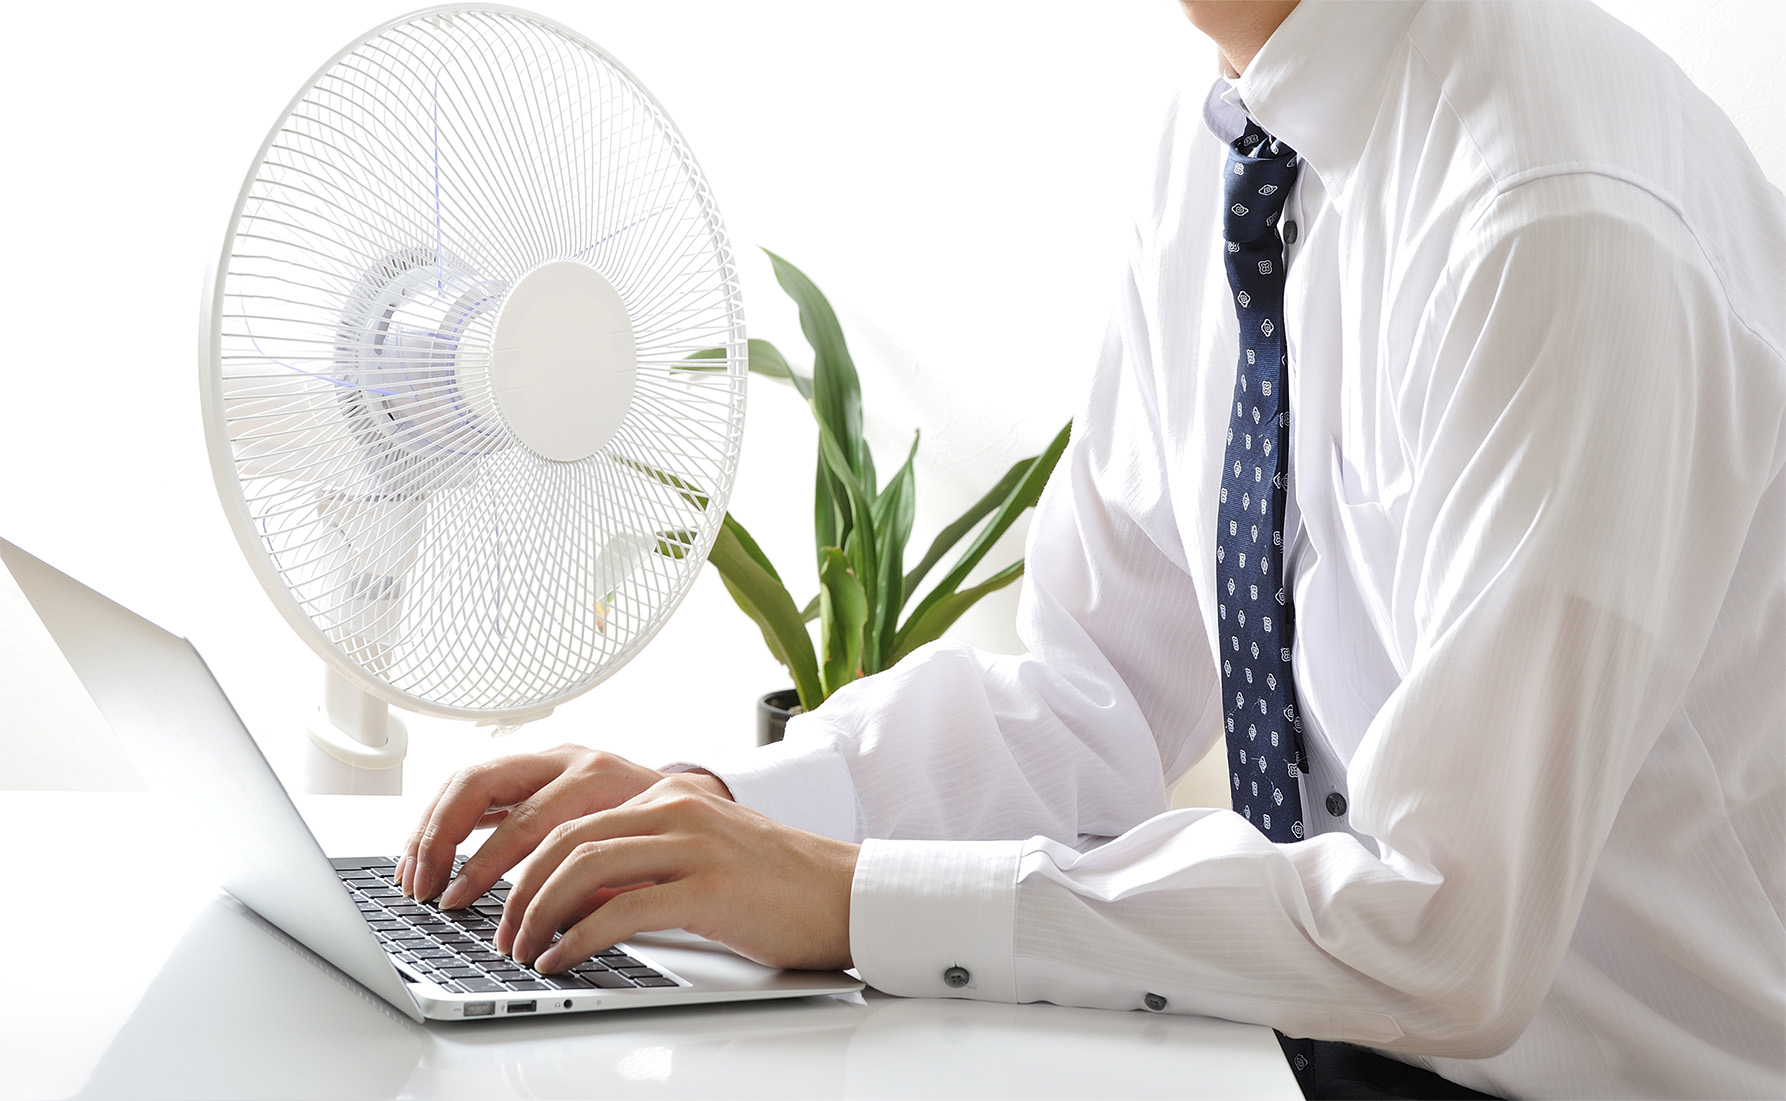 Evitar el calor en el trabajo también son medidas dentro de la prevención de riesgos laborales